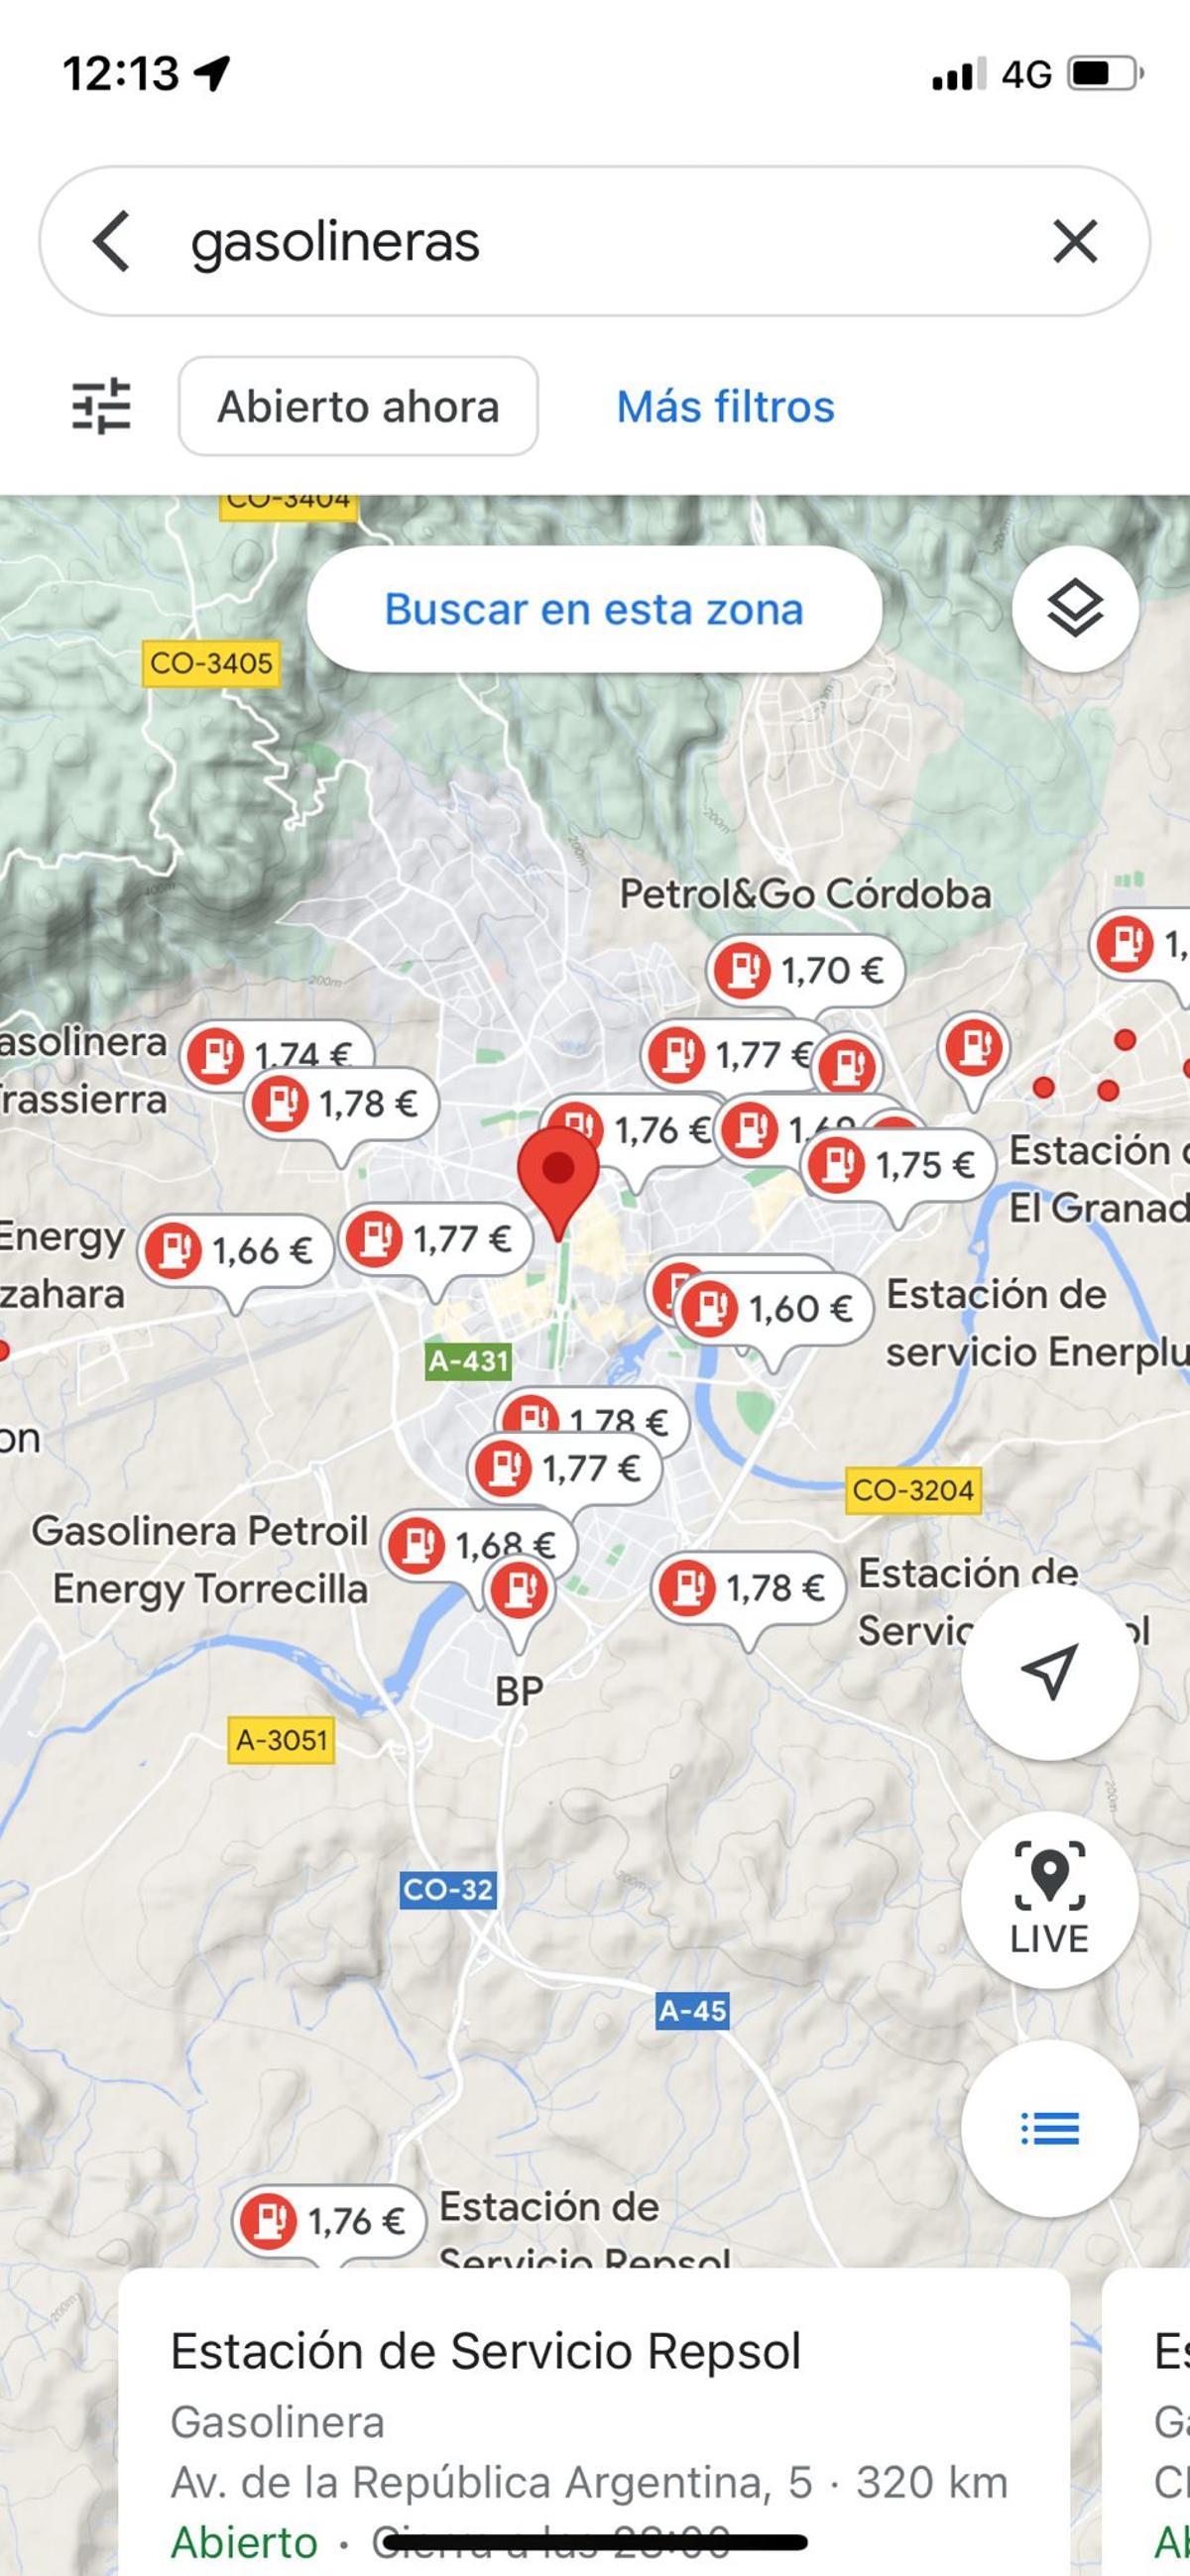 Vista de Google Maps con ubicación y precios de las gasolineras en Córdoba